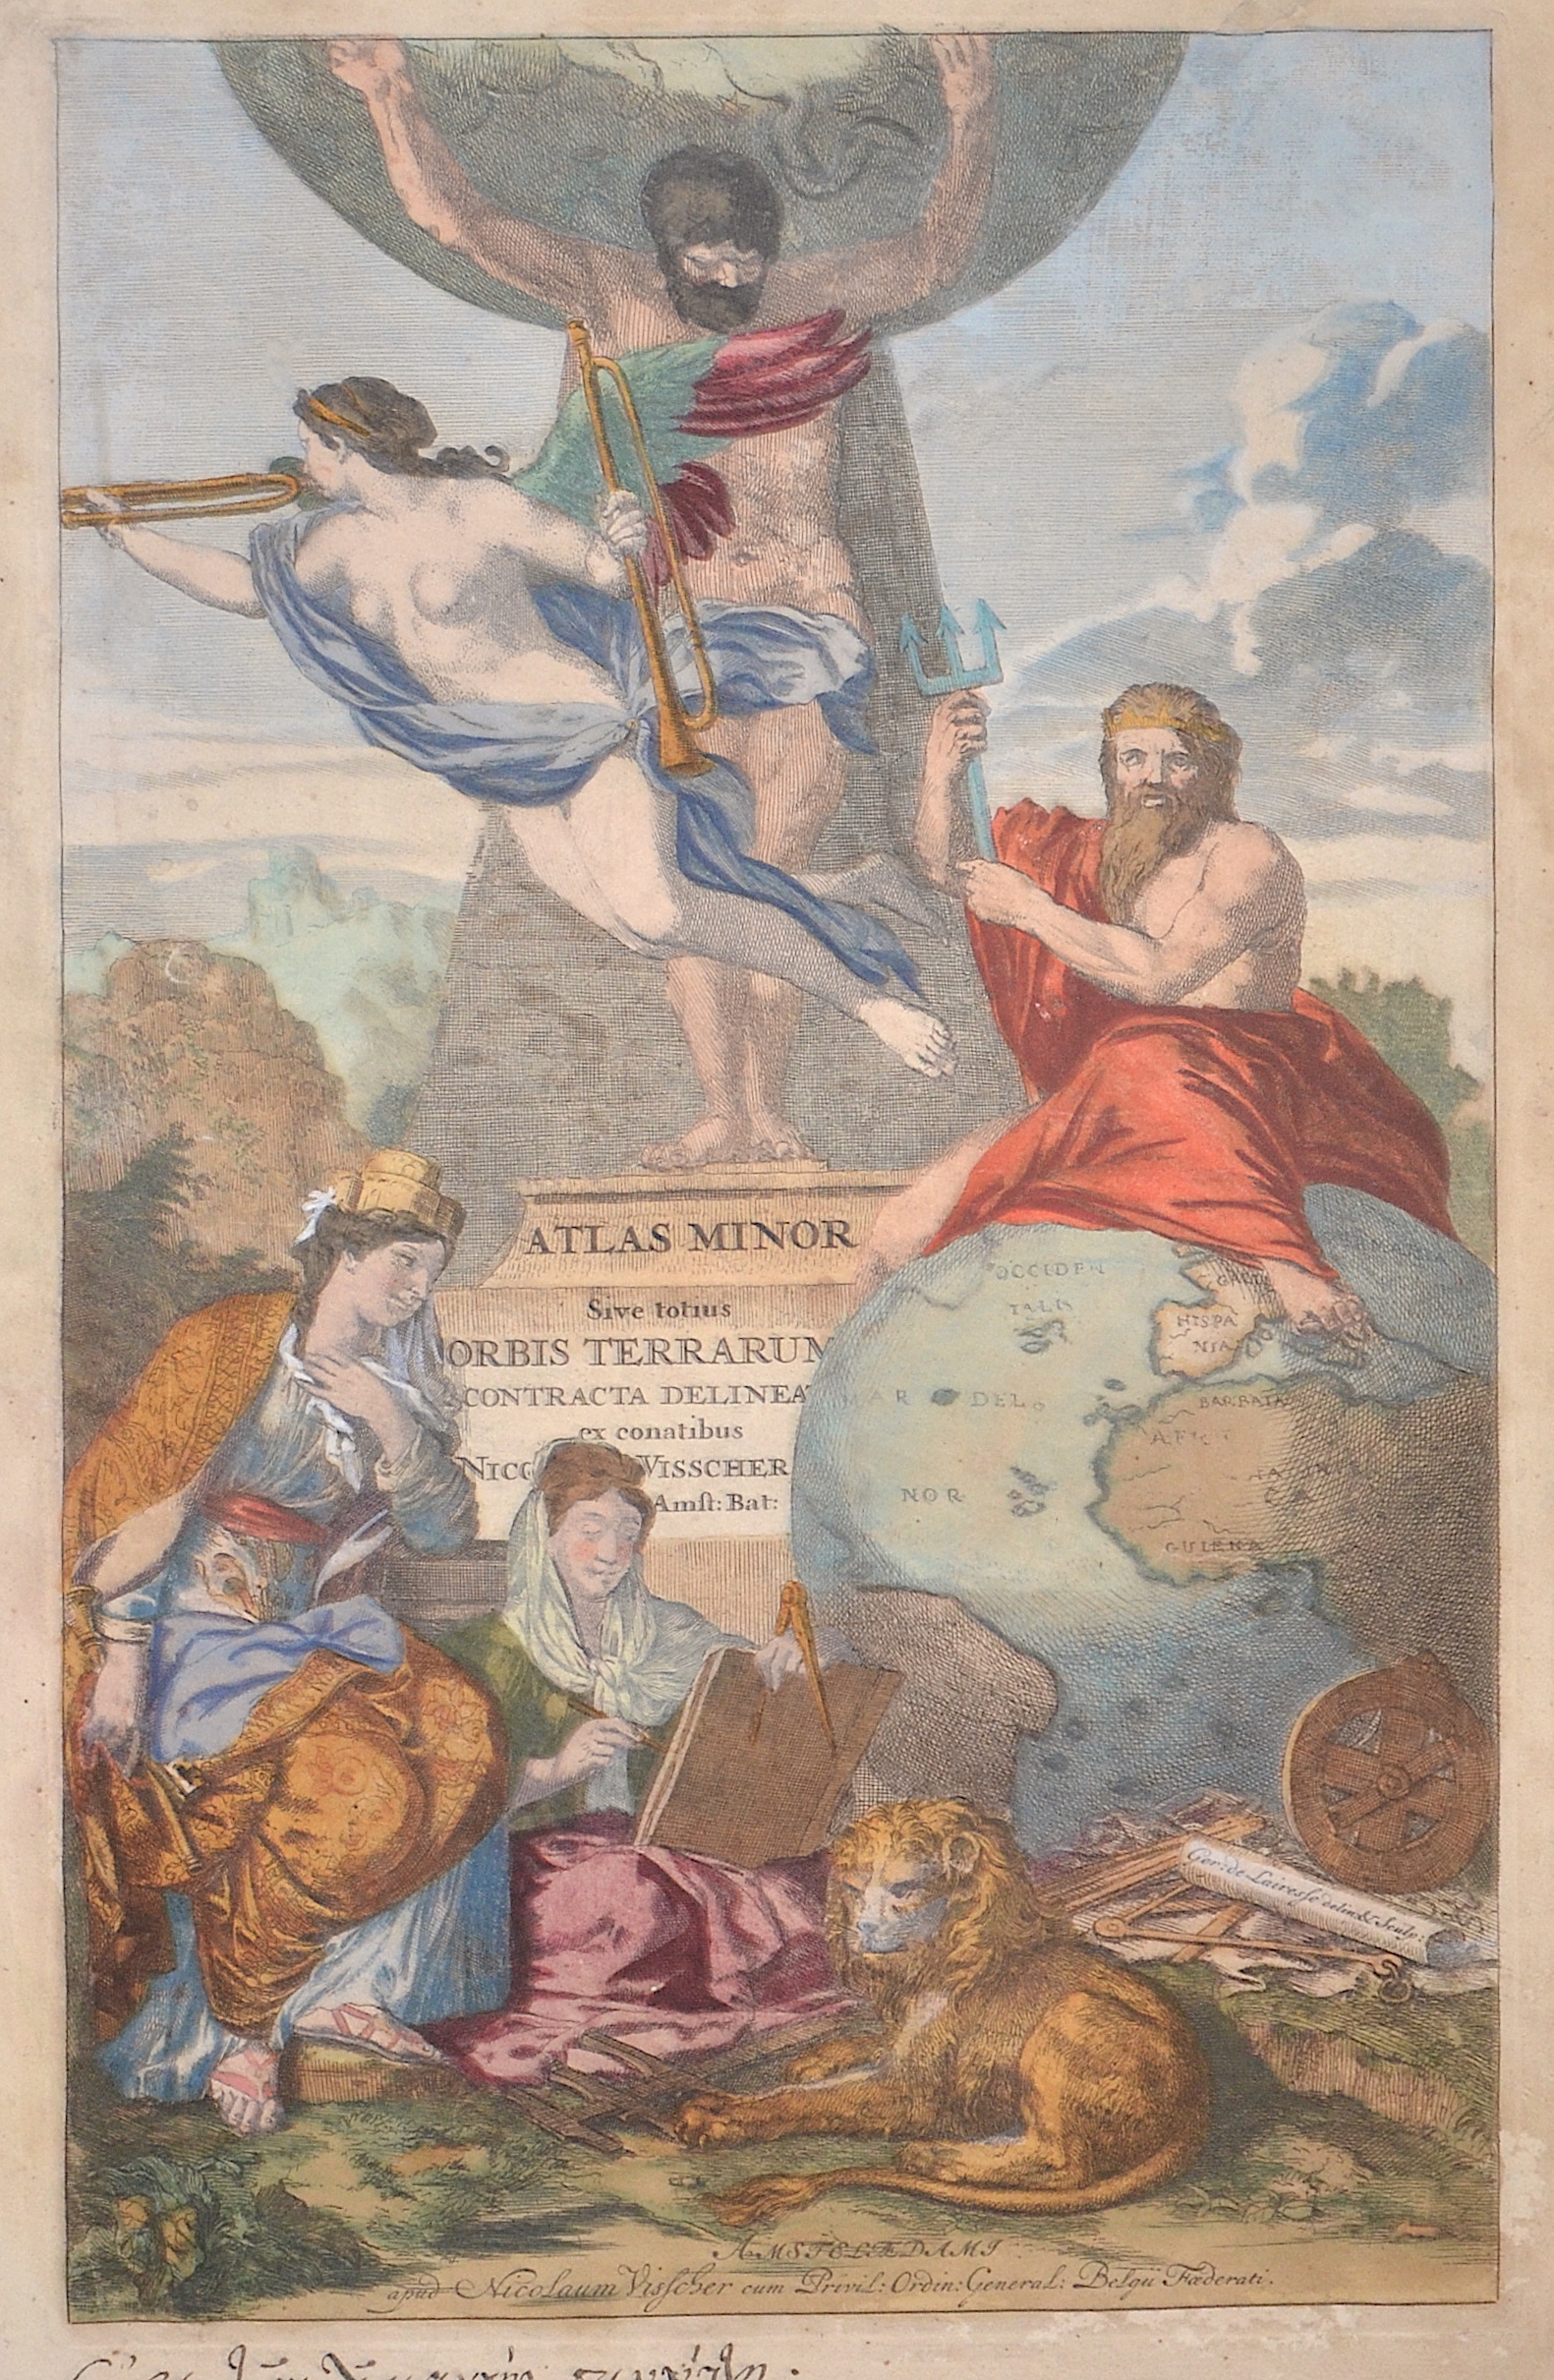 Visscher Nicolas Atlas Minor Sive totius Orbis Terrarum Contracta delineat ex conatibus